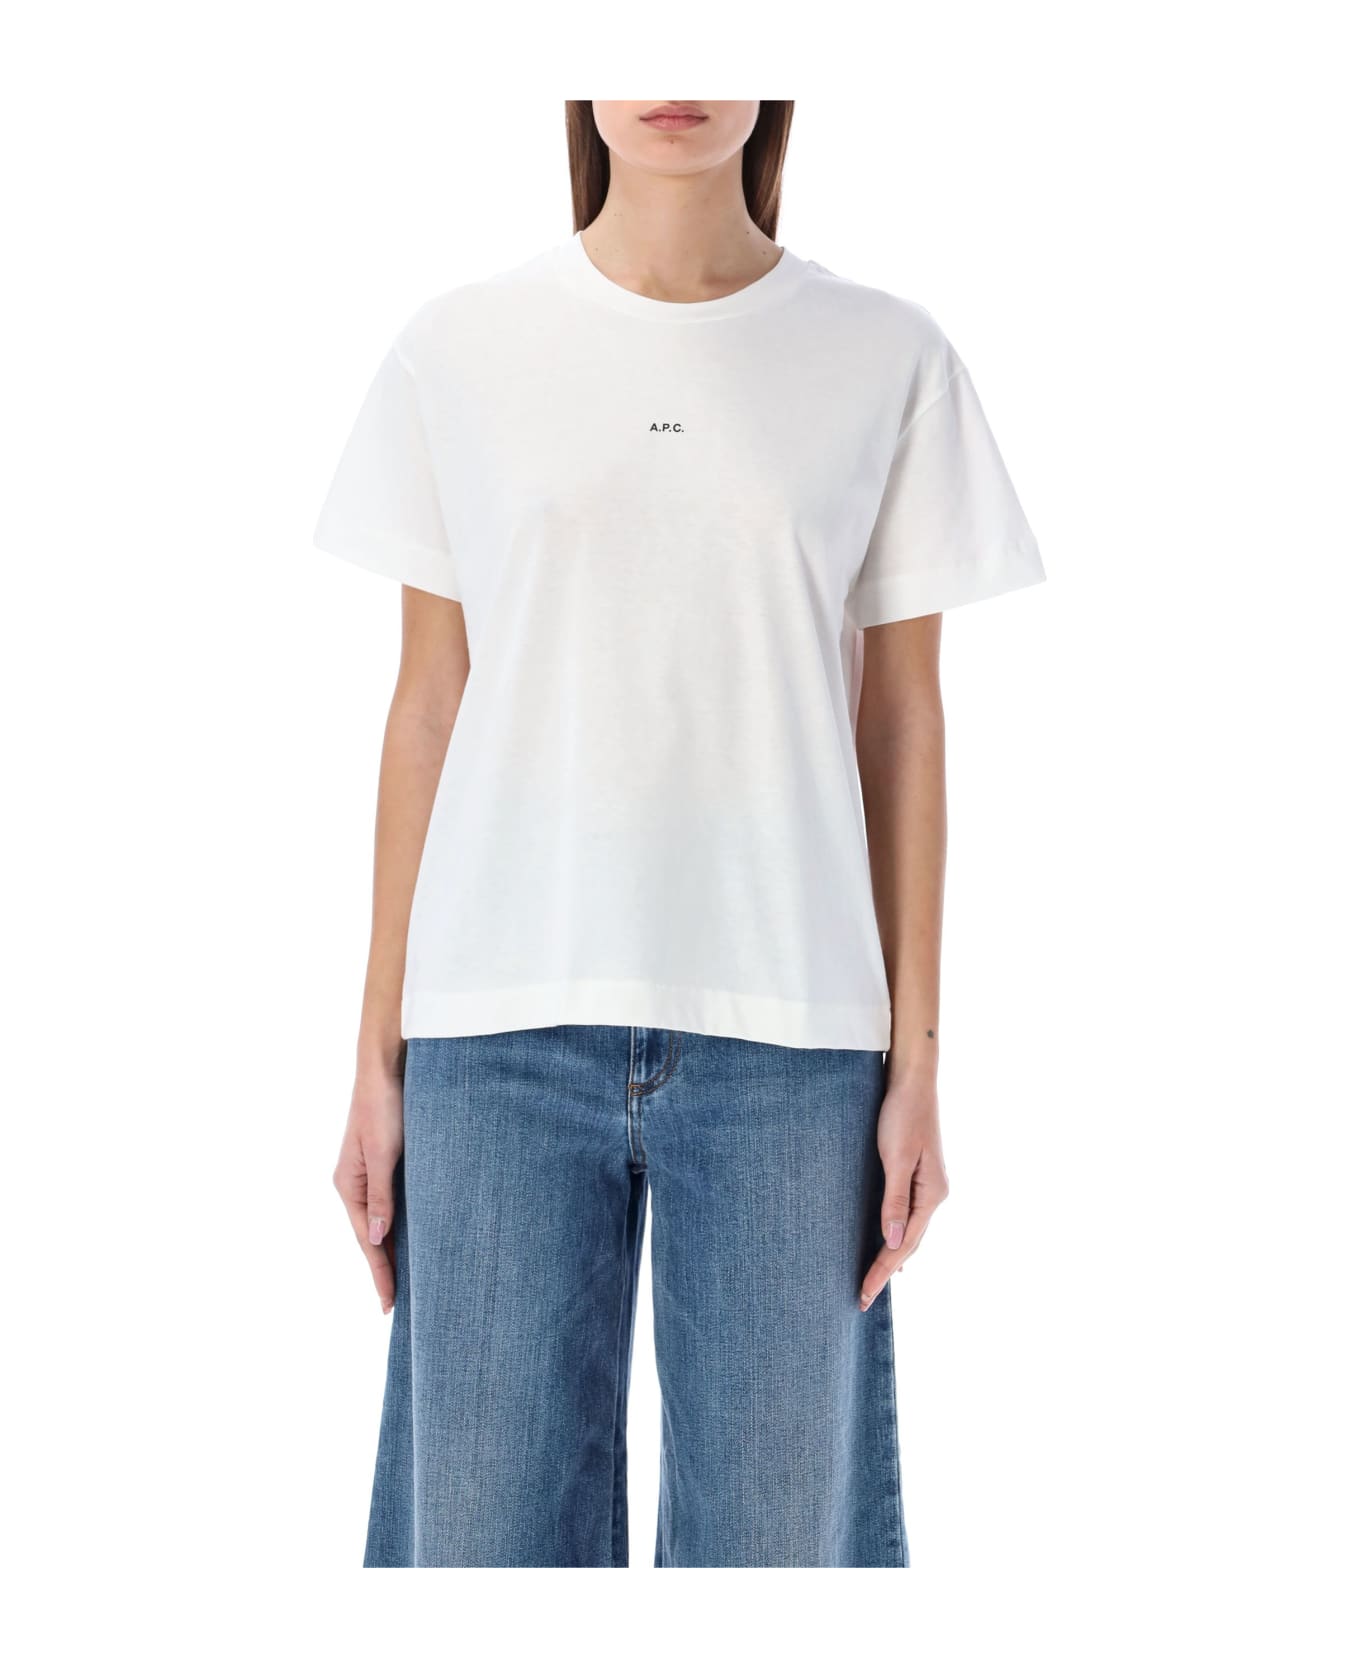 A.P.C. Jade T-shirt - WHITE